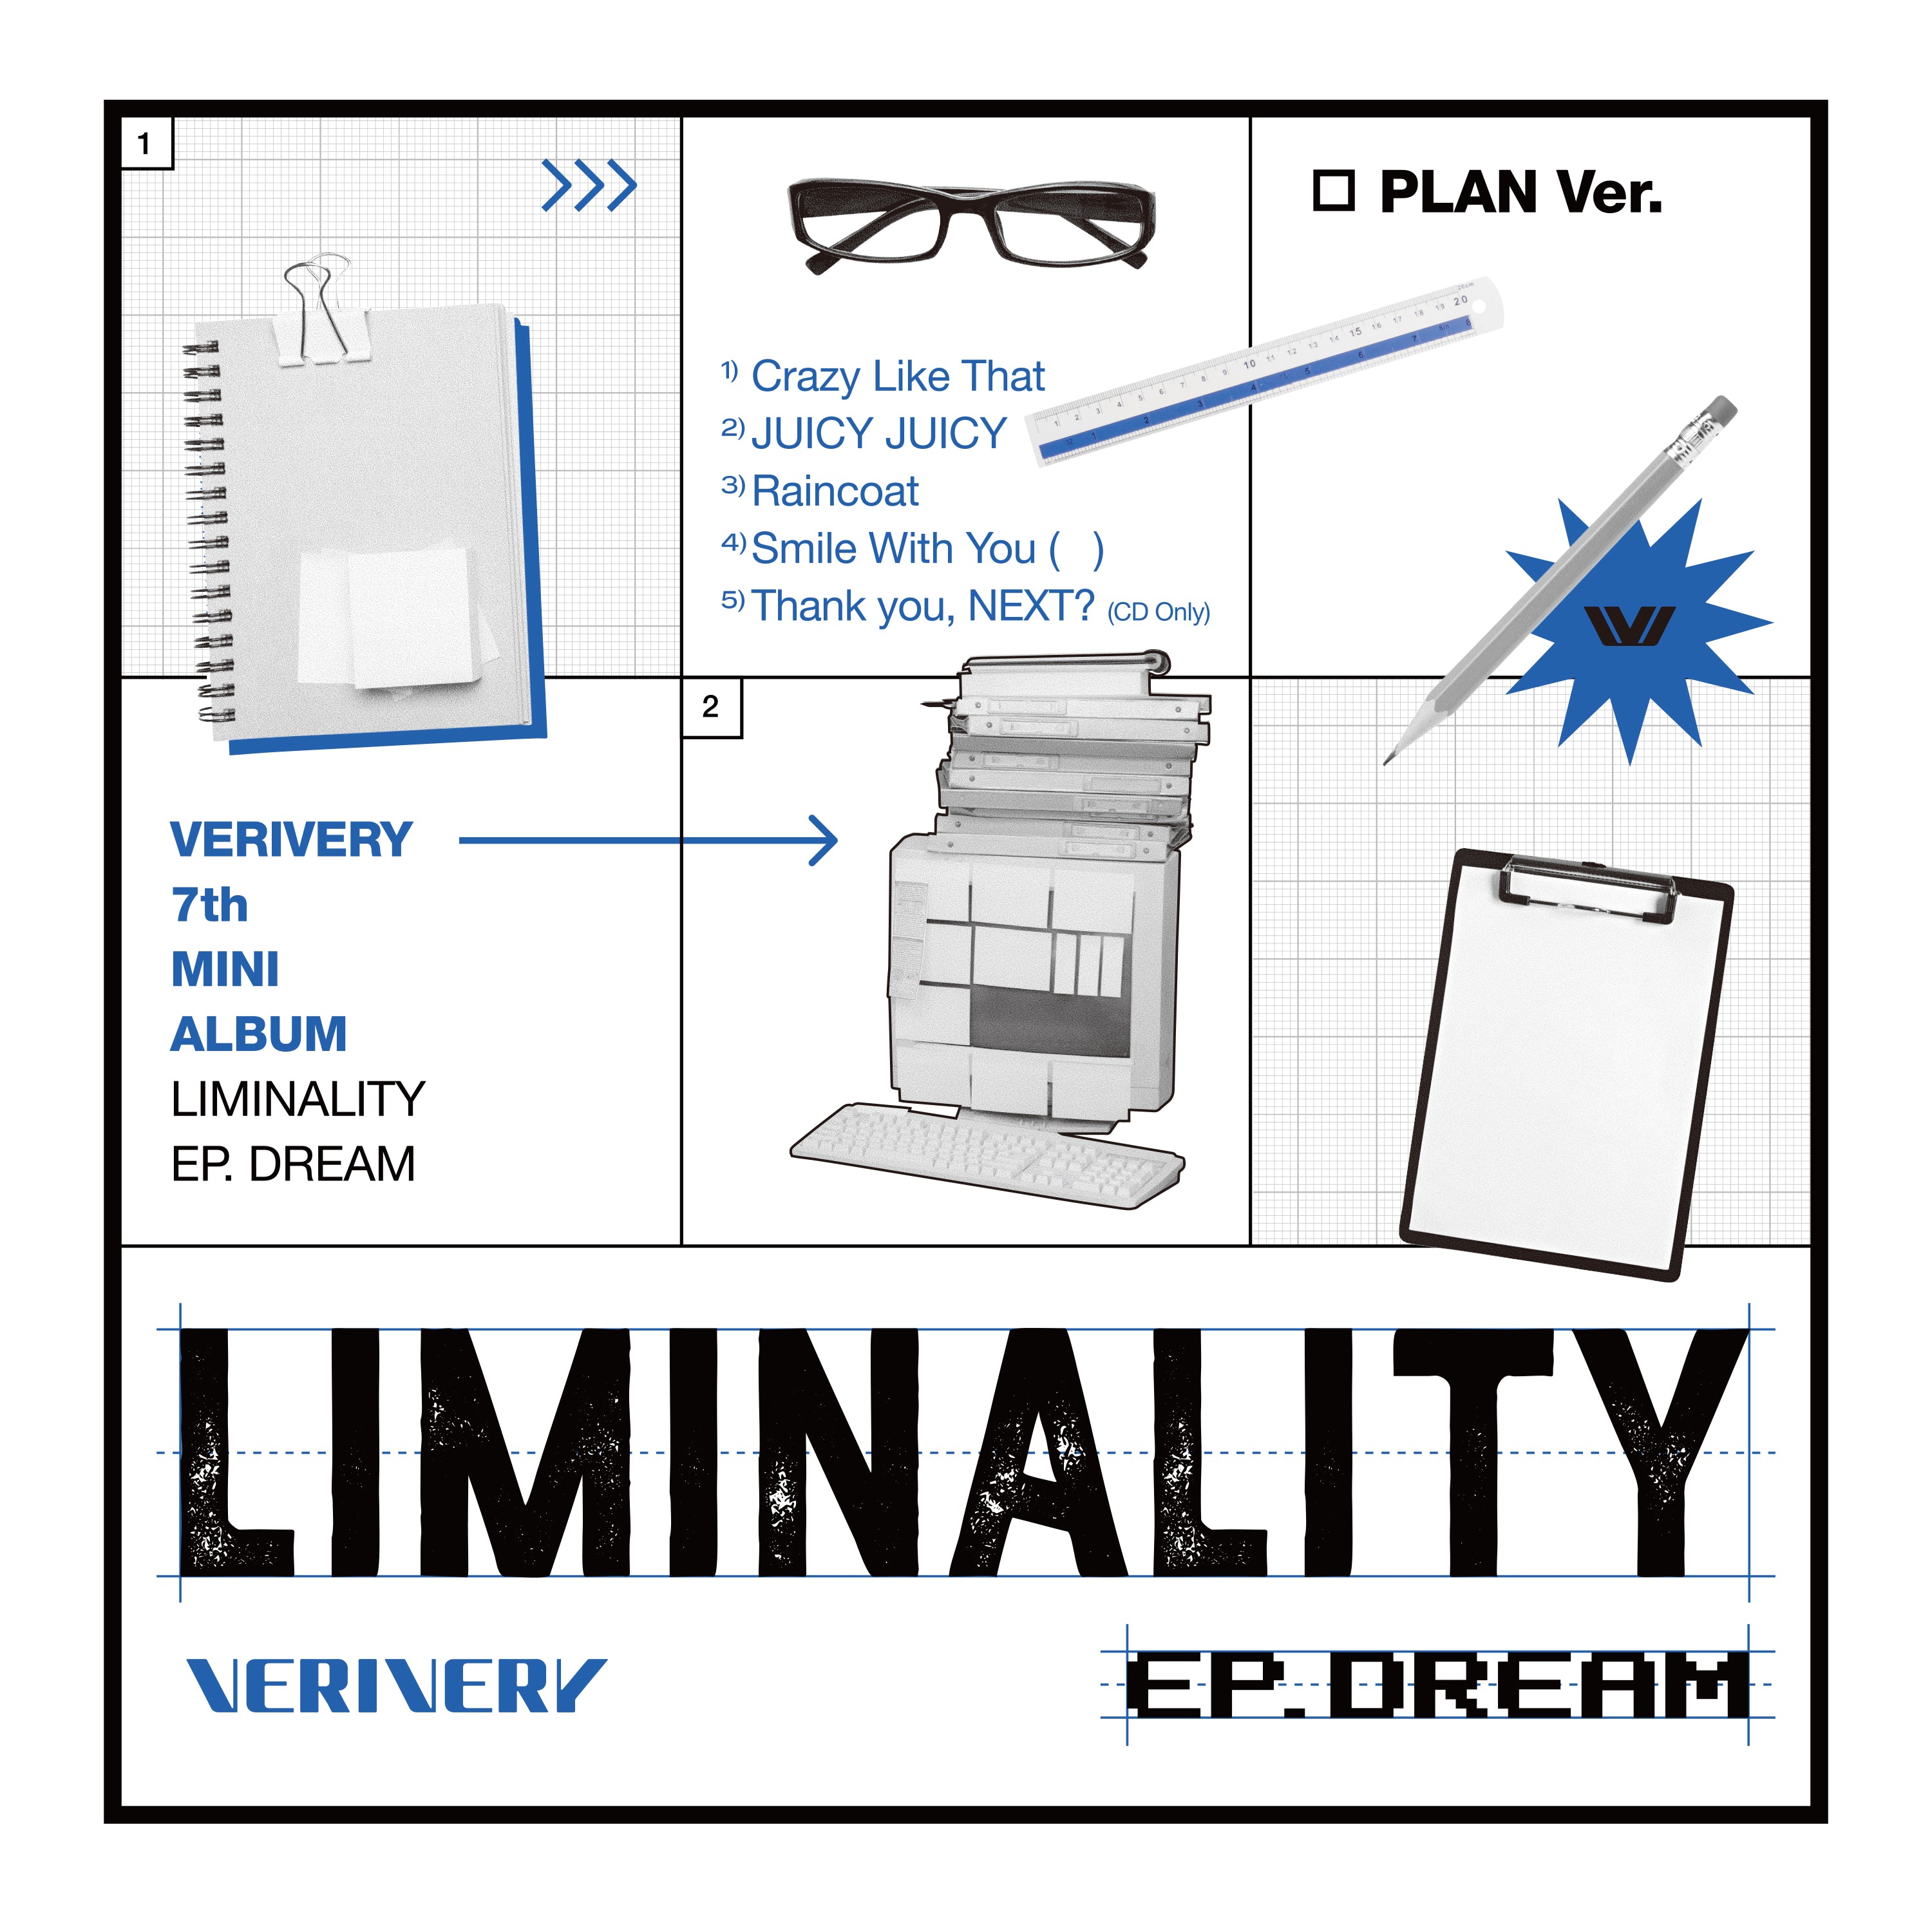 VERIVERY - Liminality - EP.DREAM (Random Ver.)